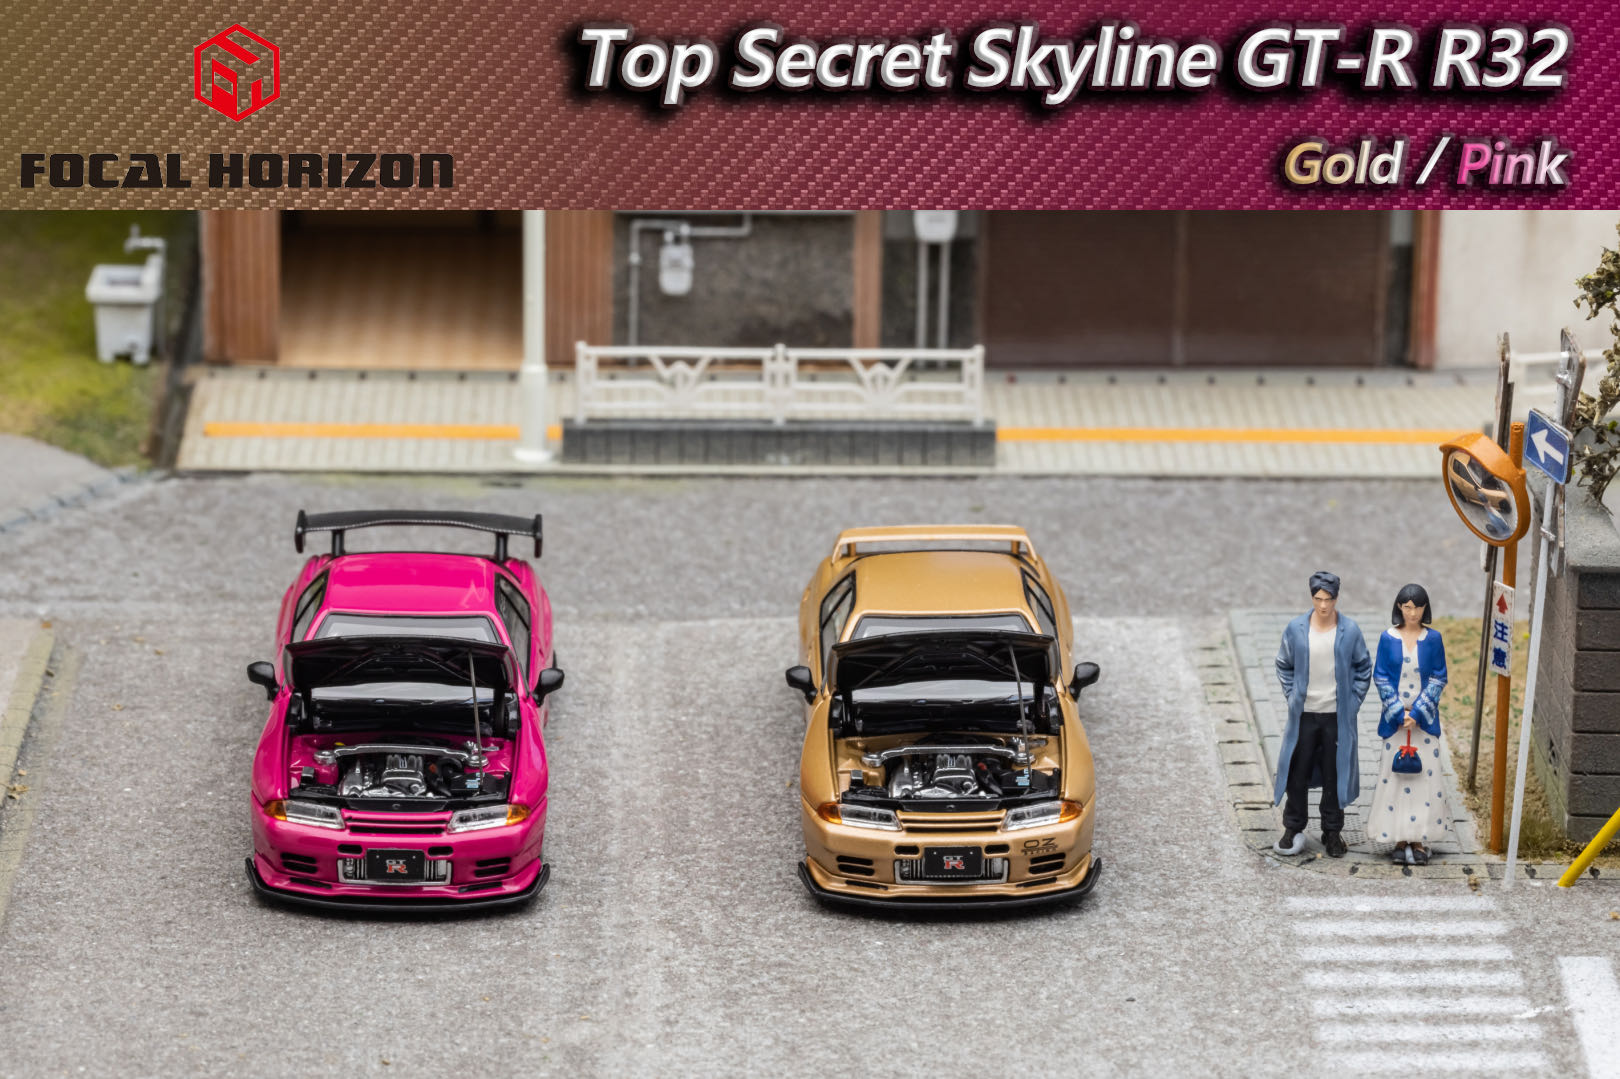 [PDS]FH 1:64 尼桑GT-R 3代R32 Top Secret VR32前盖可开合金车模 - 图3